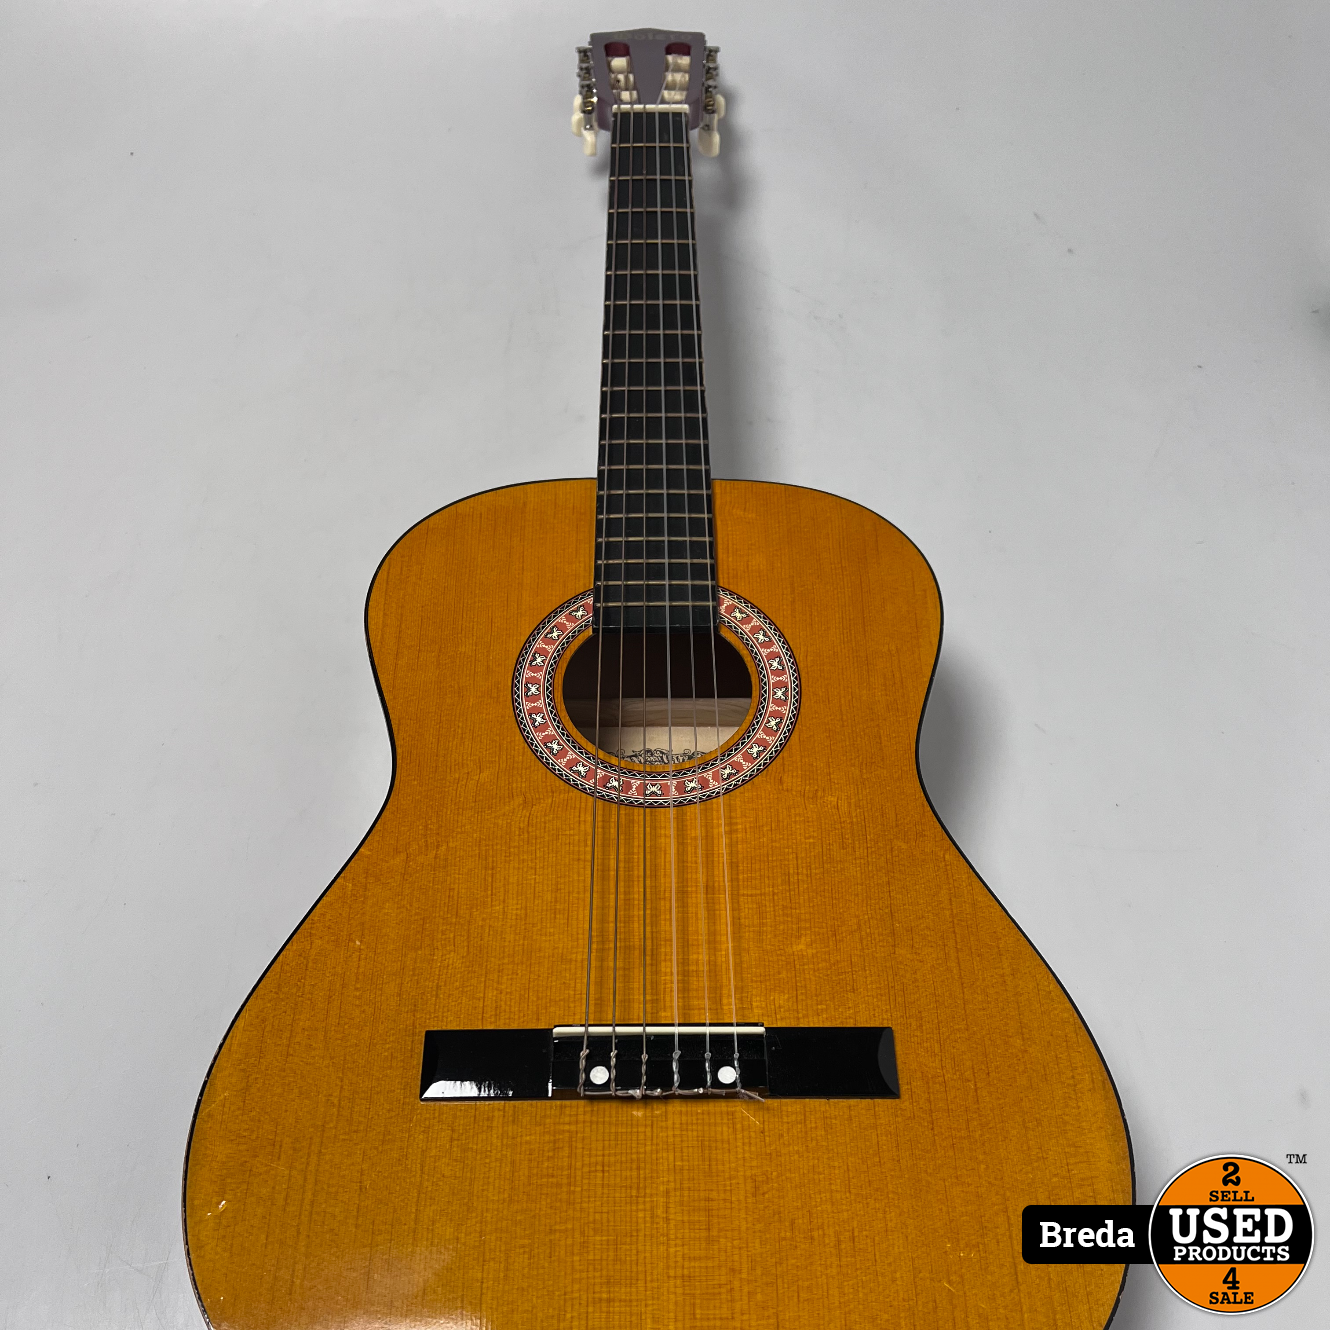 C75 akoestische gitaar | Nette staat | garantie - Used Products Breda